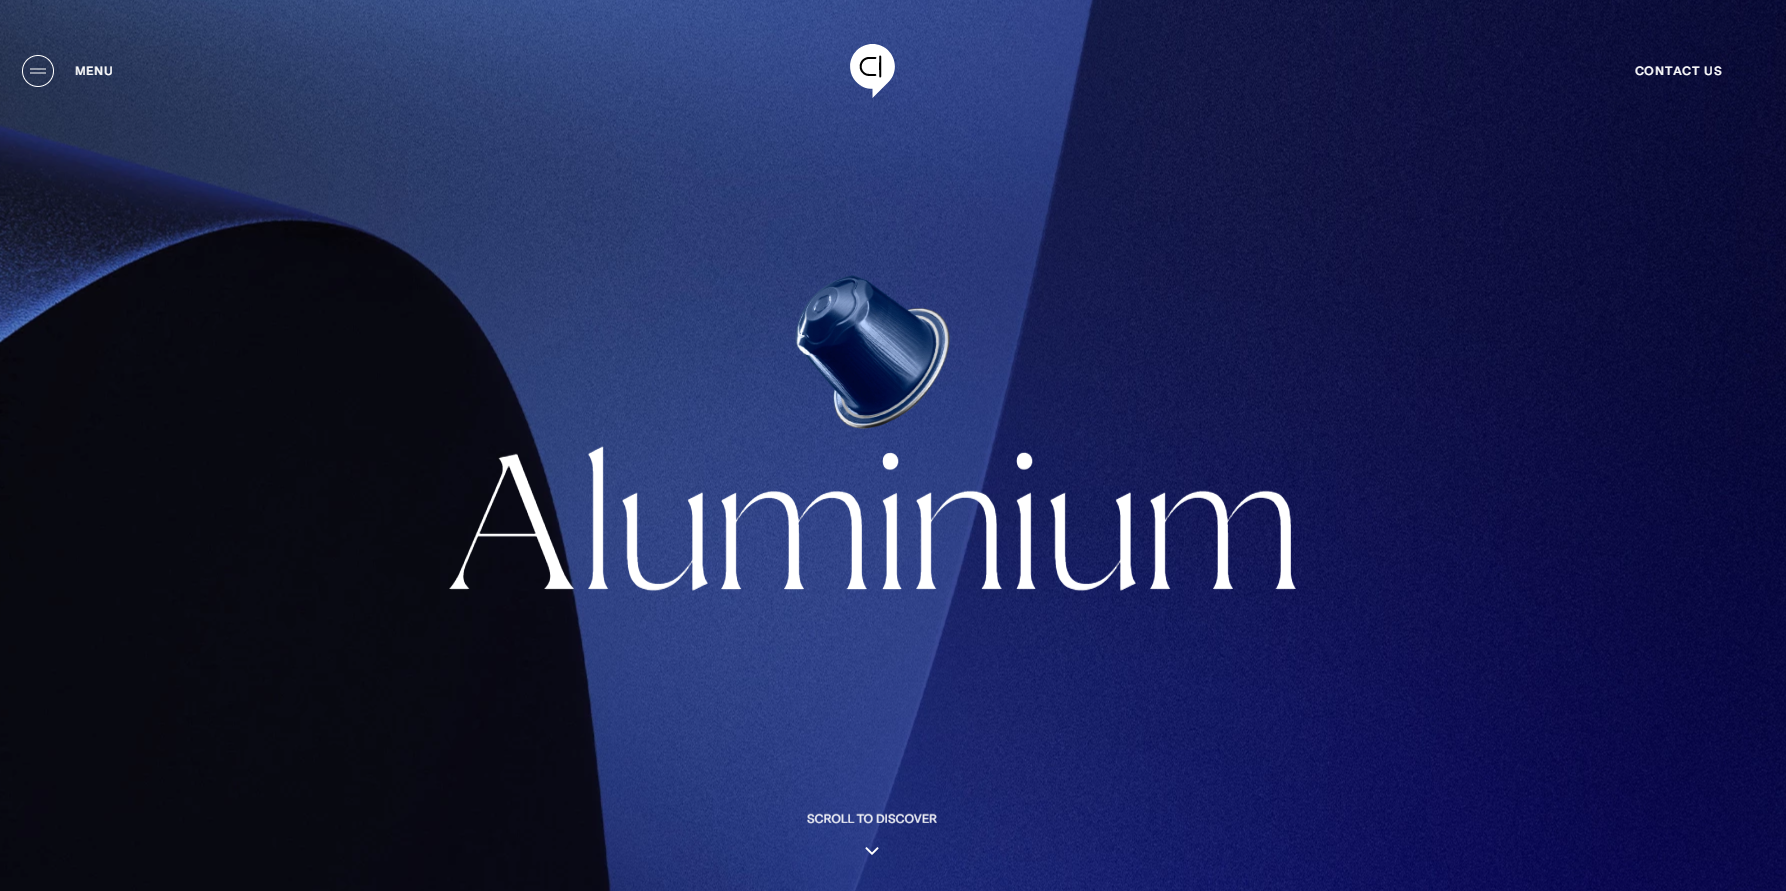 Marka Aluminium ma na swojej stronie minimalistyczną sekcję Hero